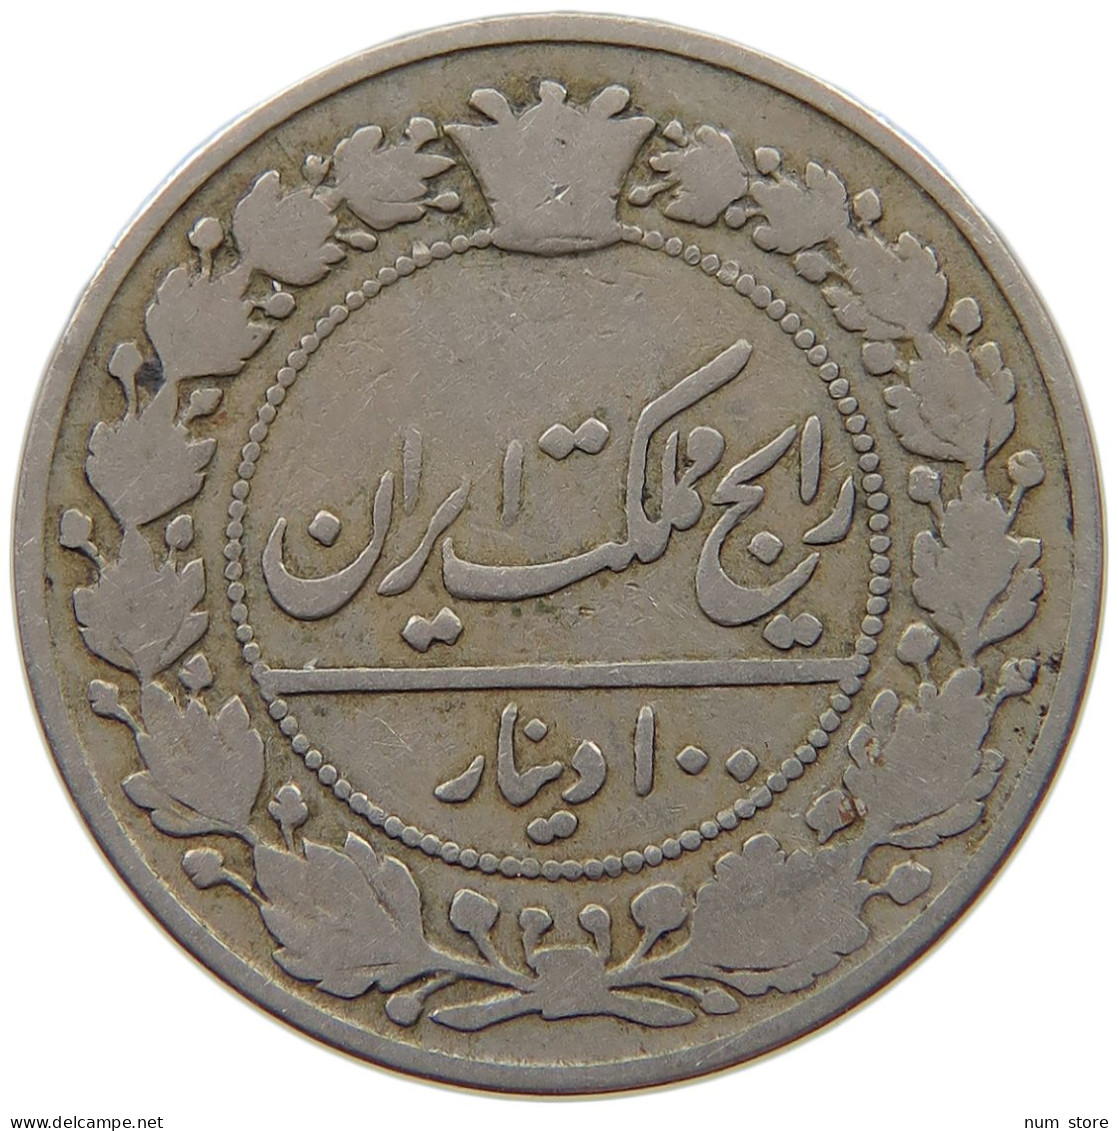 IRAN 100 DINAR 1319 MUZAFFAR AL-DIN SHAH (1896-1907) #MA 018992 - Iran